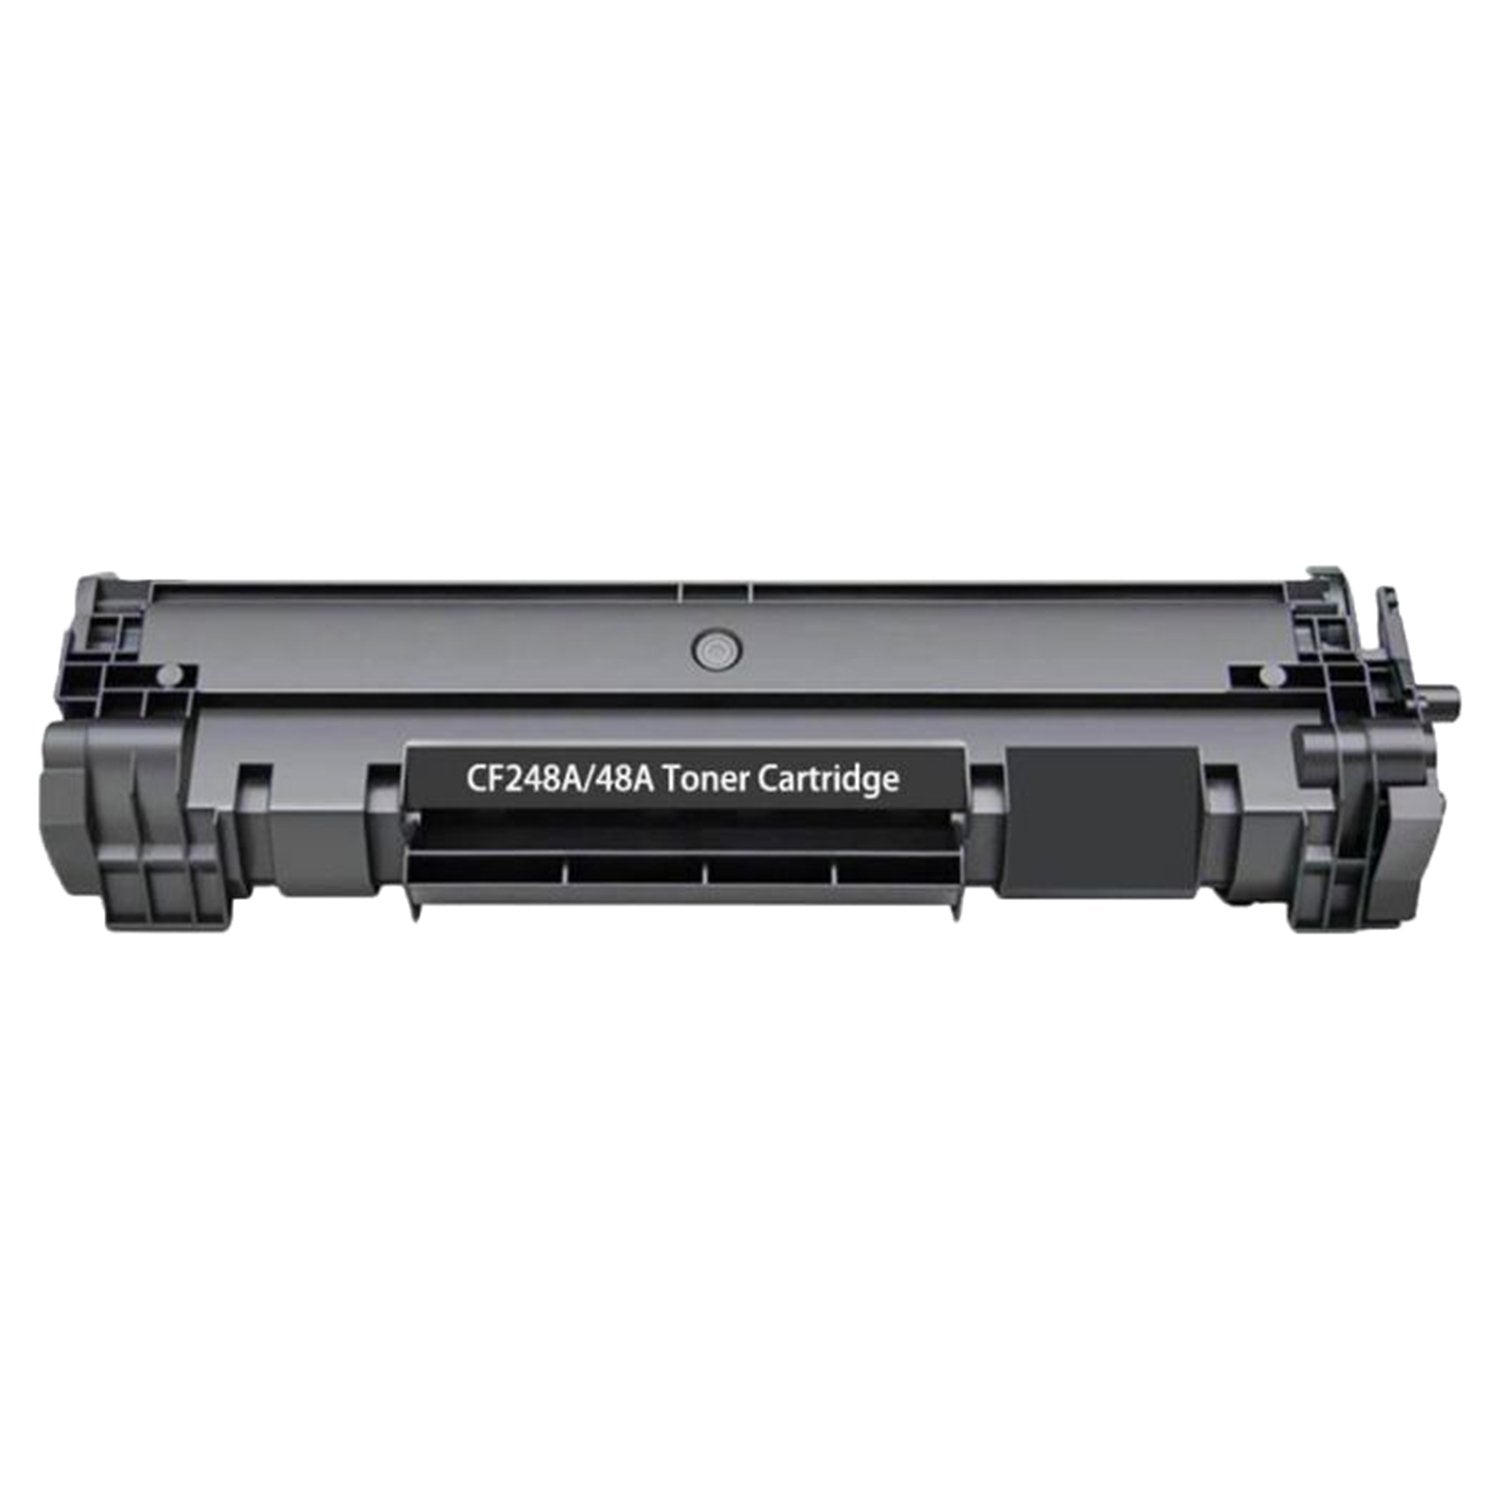 Absolute Toner Compatible CF248A HP 48A Black Toner Cartridge | Absolute Toner HP Toner Cartridges